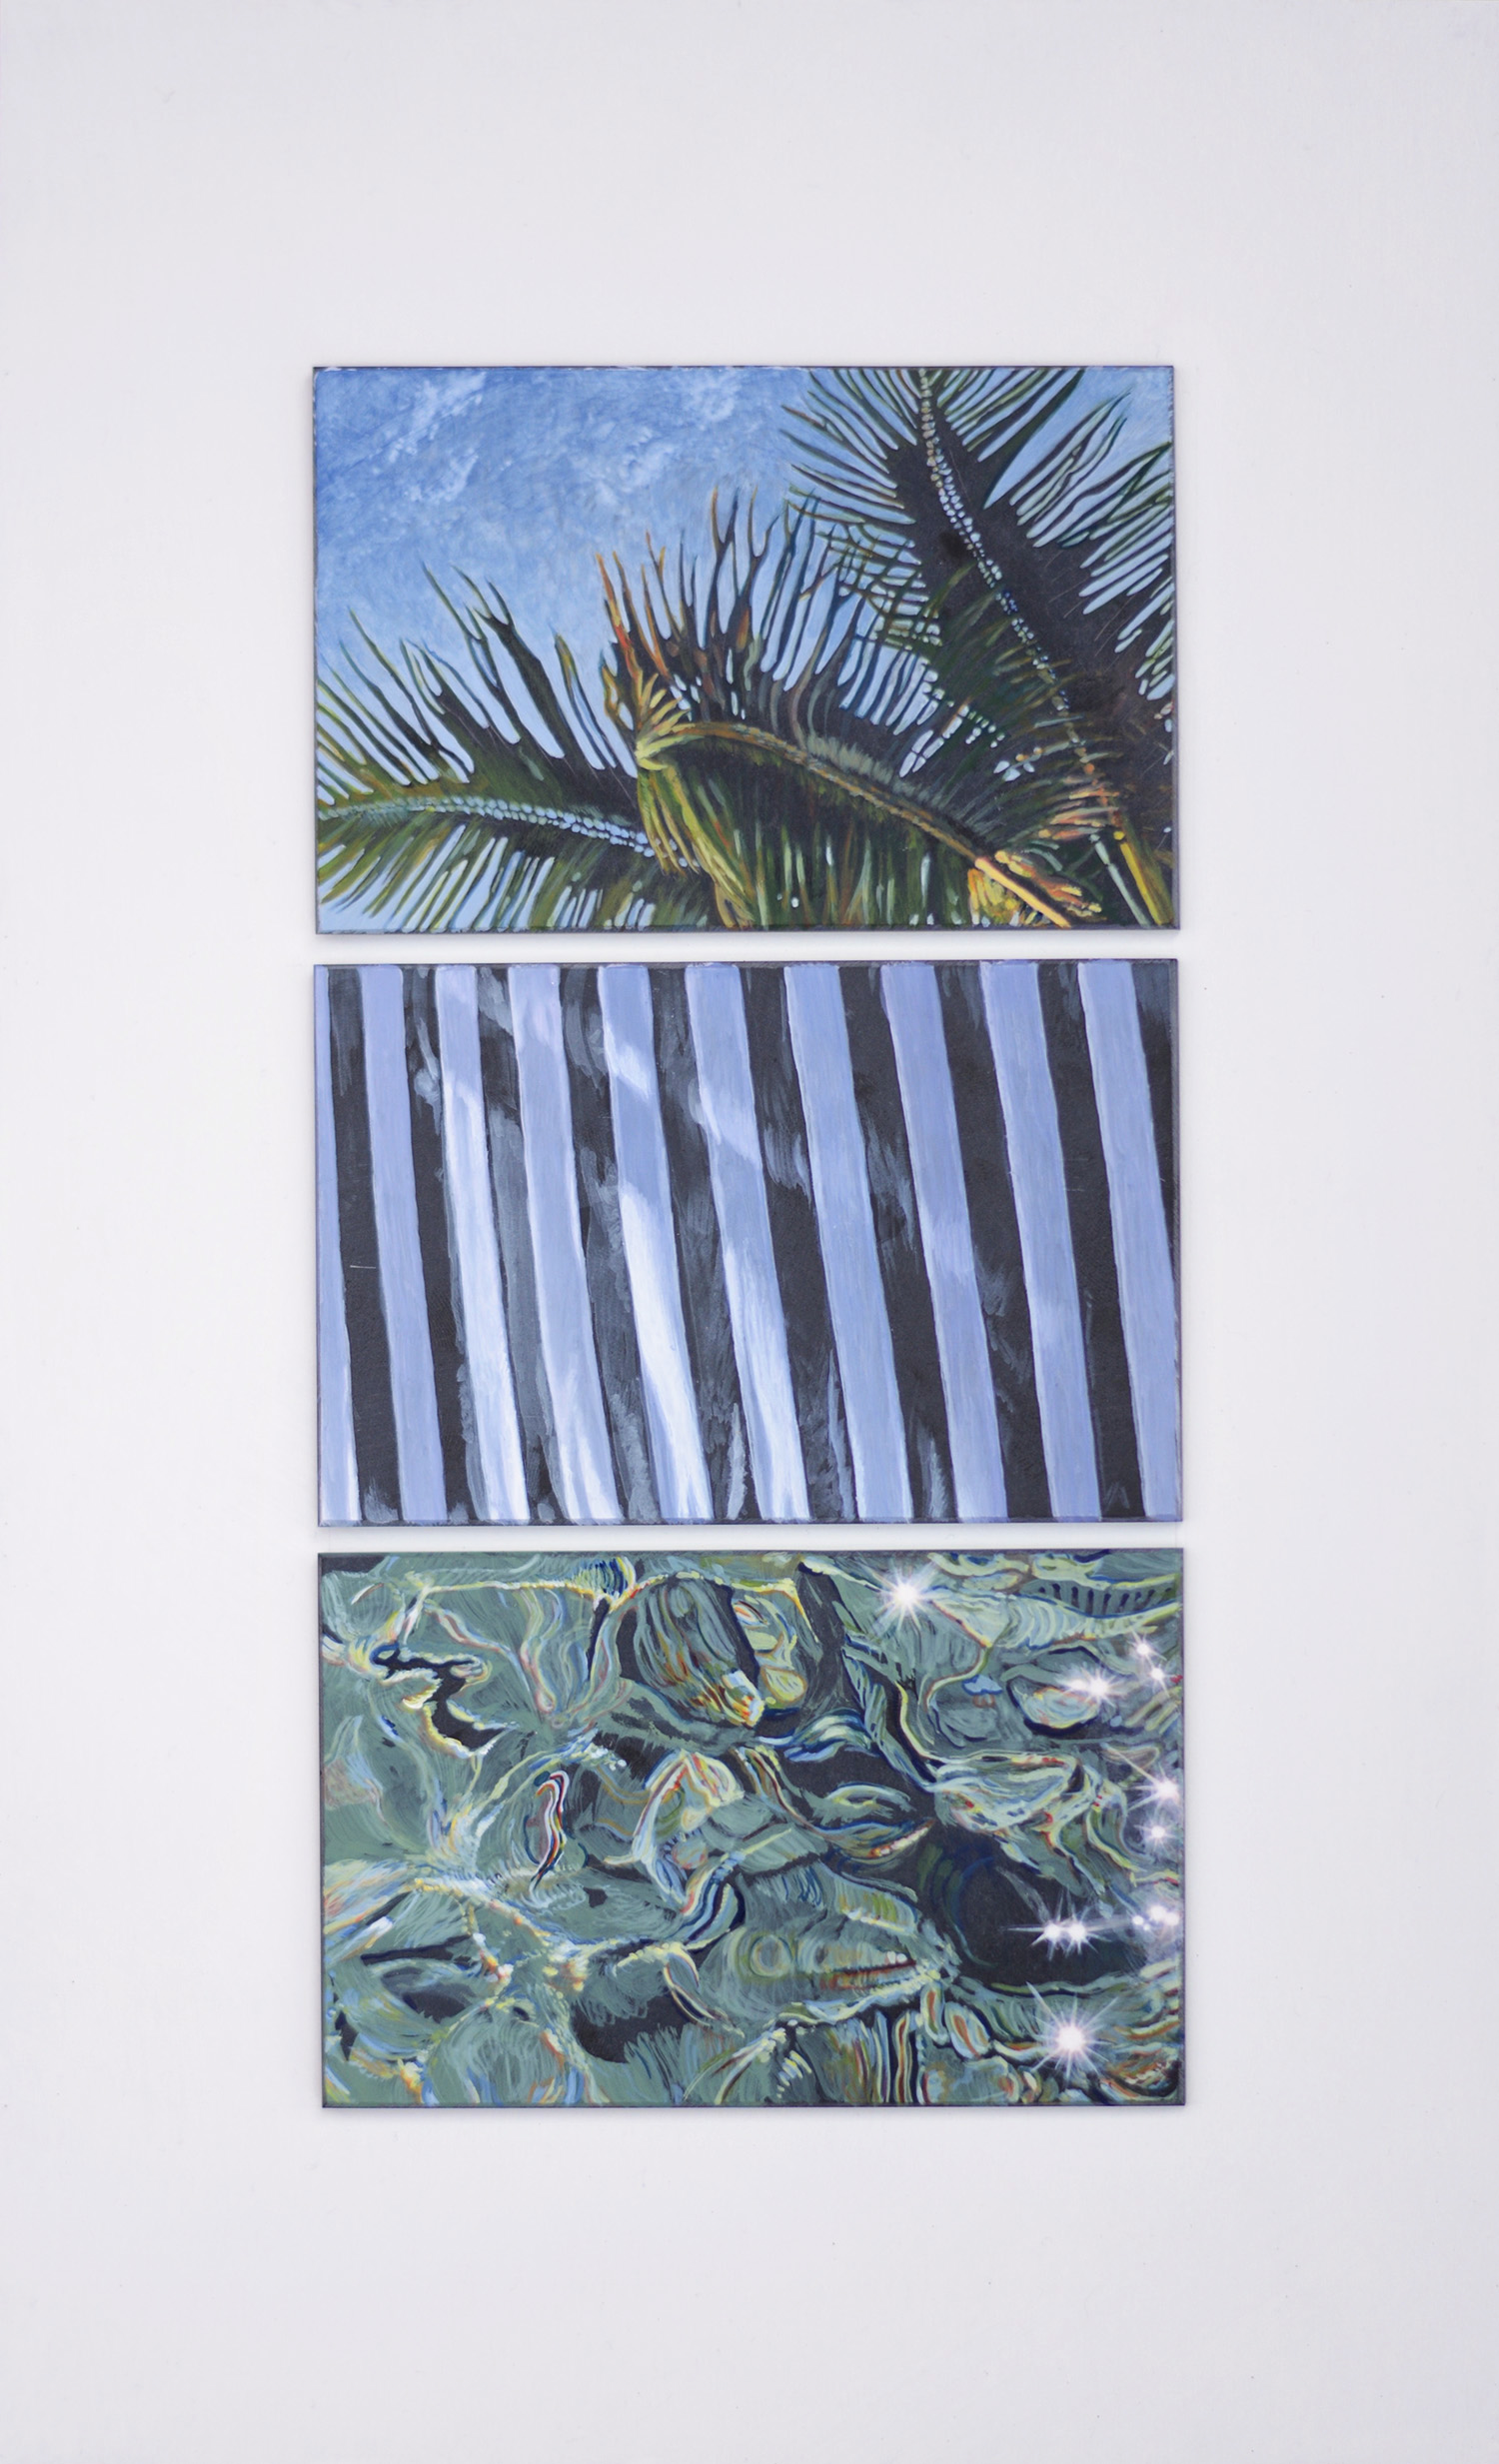 
'Estate (cielo, terra, mare)'
(2016), 
trittico, acrilico su ardesia. Tre lastre di ardesia dipinte a mano (9x14 cm ognuna) su base in legno smaltato,
40x25 cm.
